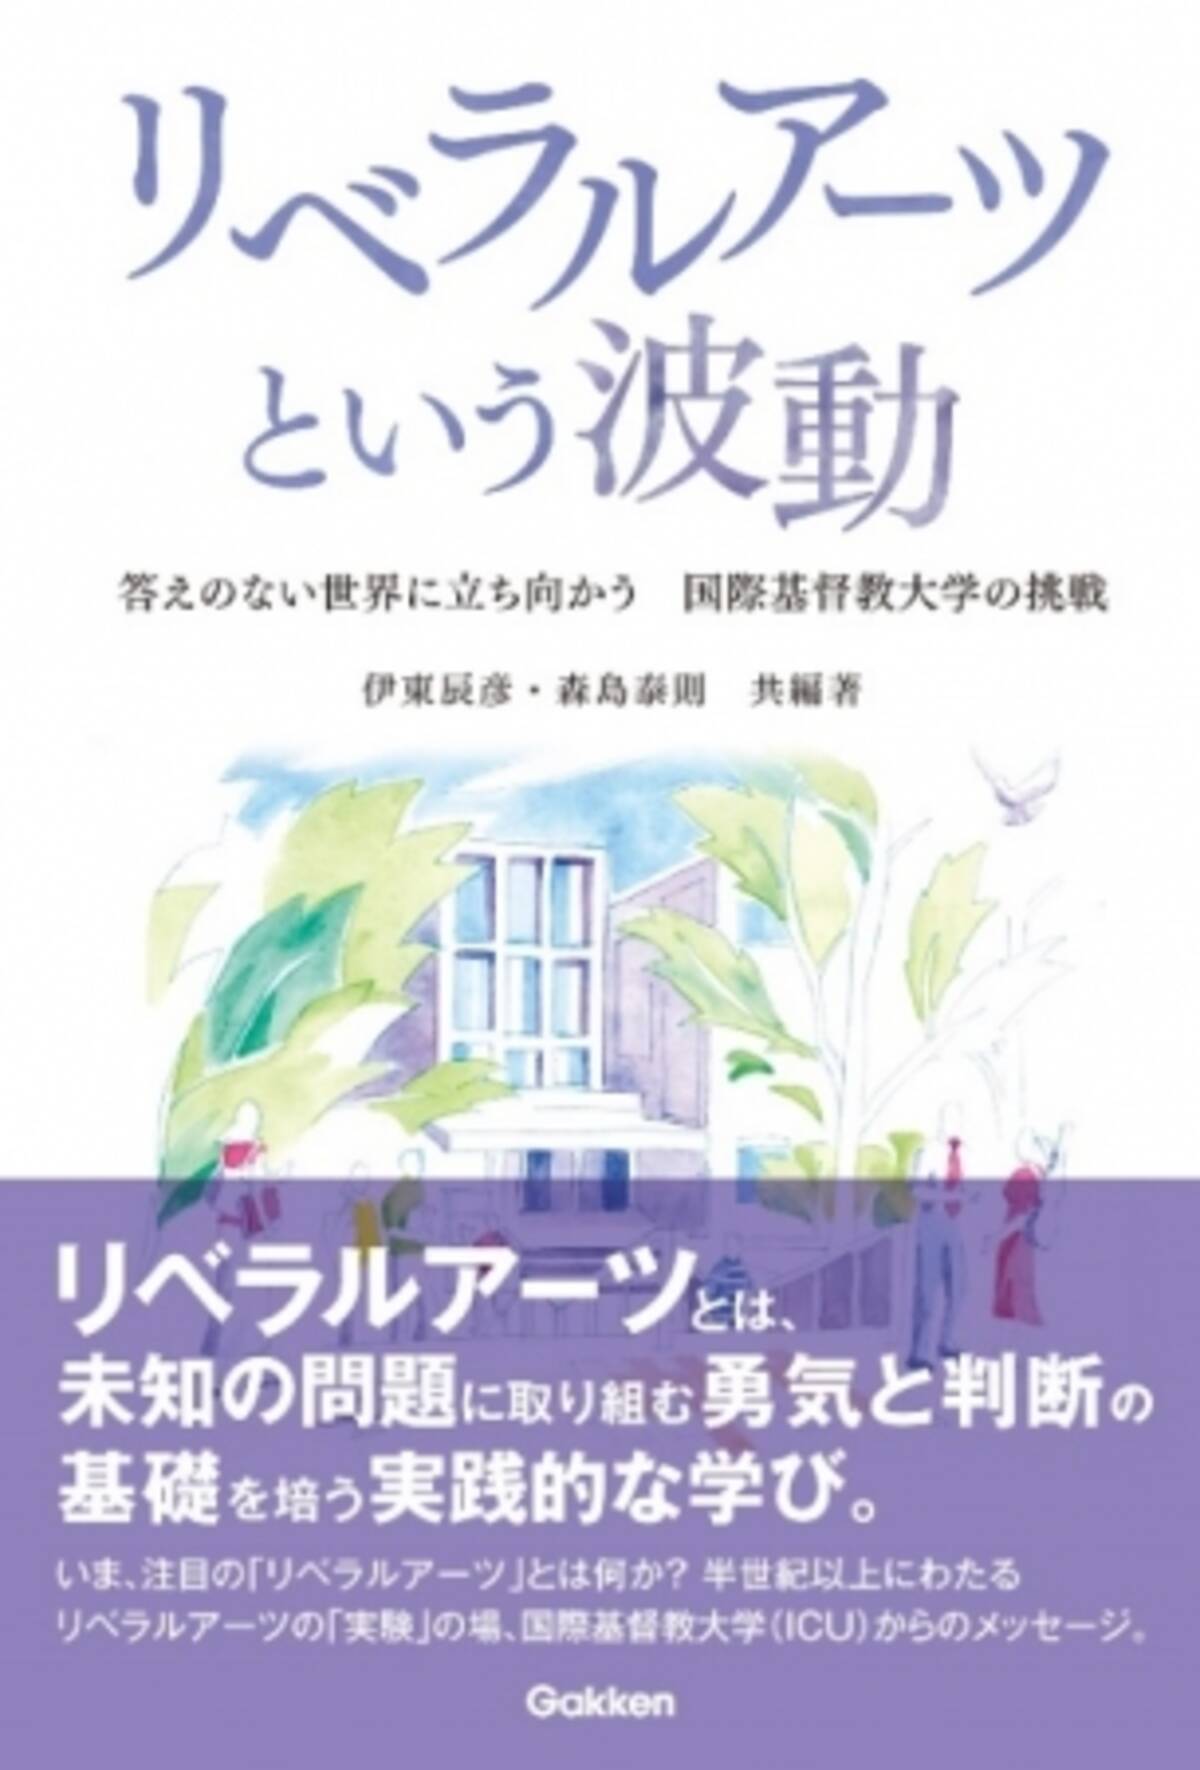 リベラルアーツとは何か を考えるための一冊 日本で最初のリベラルアーツ カレッジ 国際基督教大学 ｉｃｕ からのメッセージ 19年10月21日 エキサイトニュース